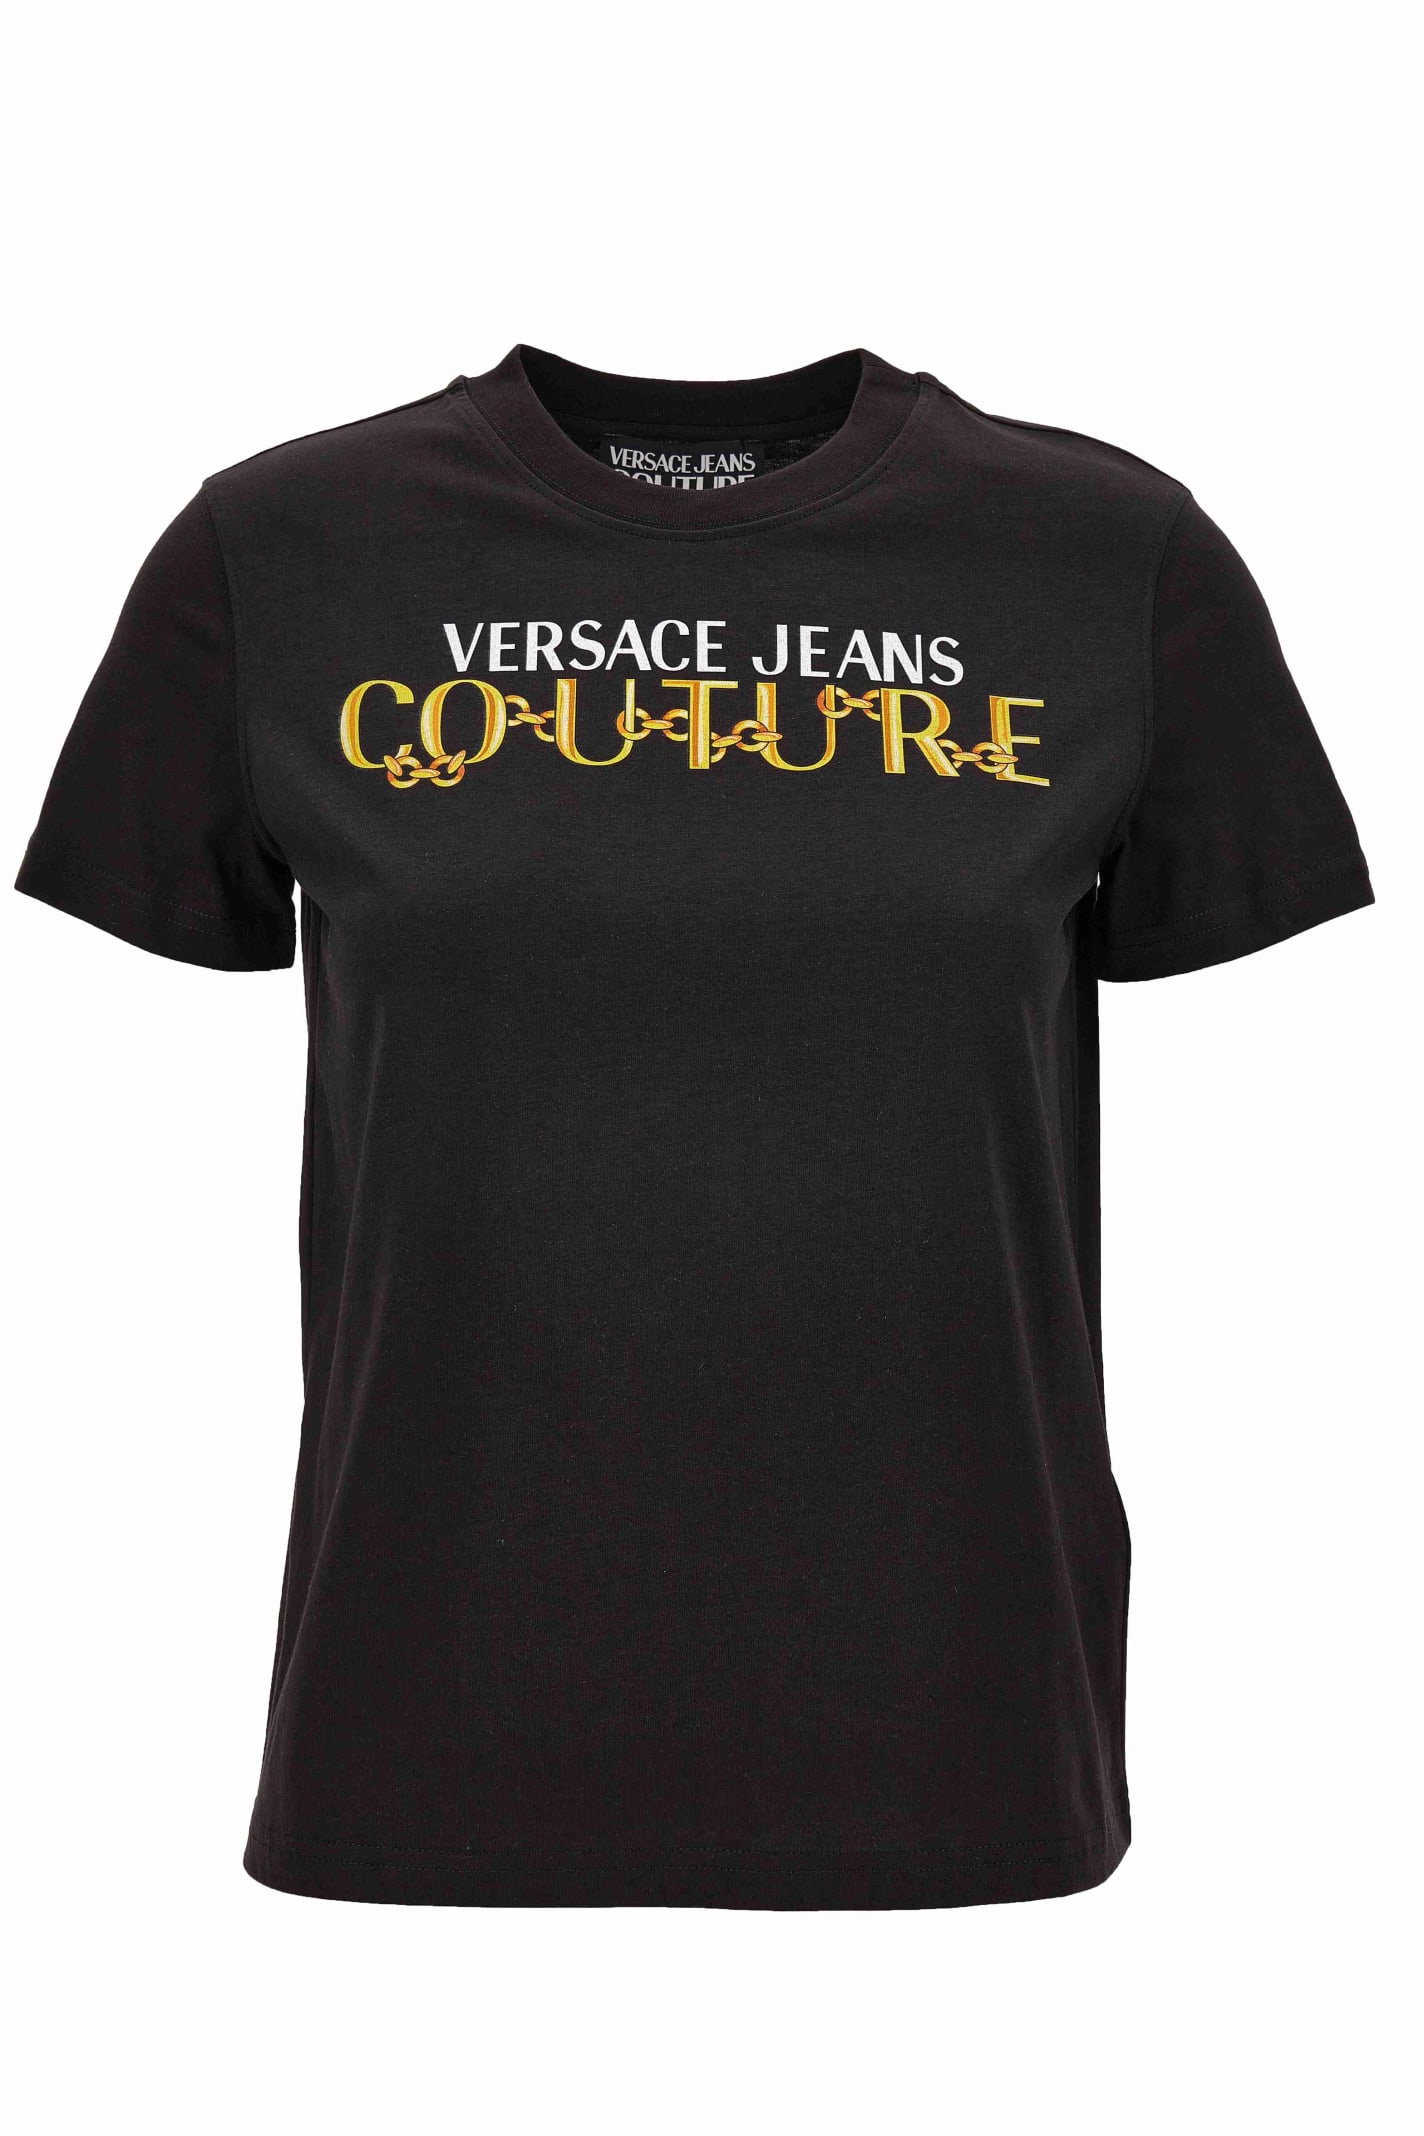 Shop Versace Jeans Couture Black T-shirt